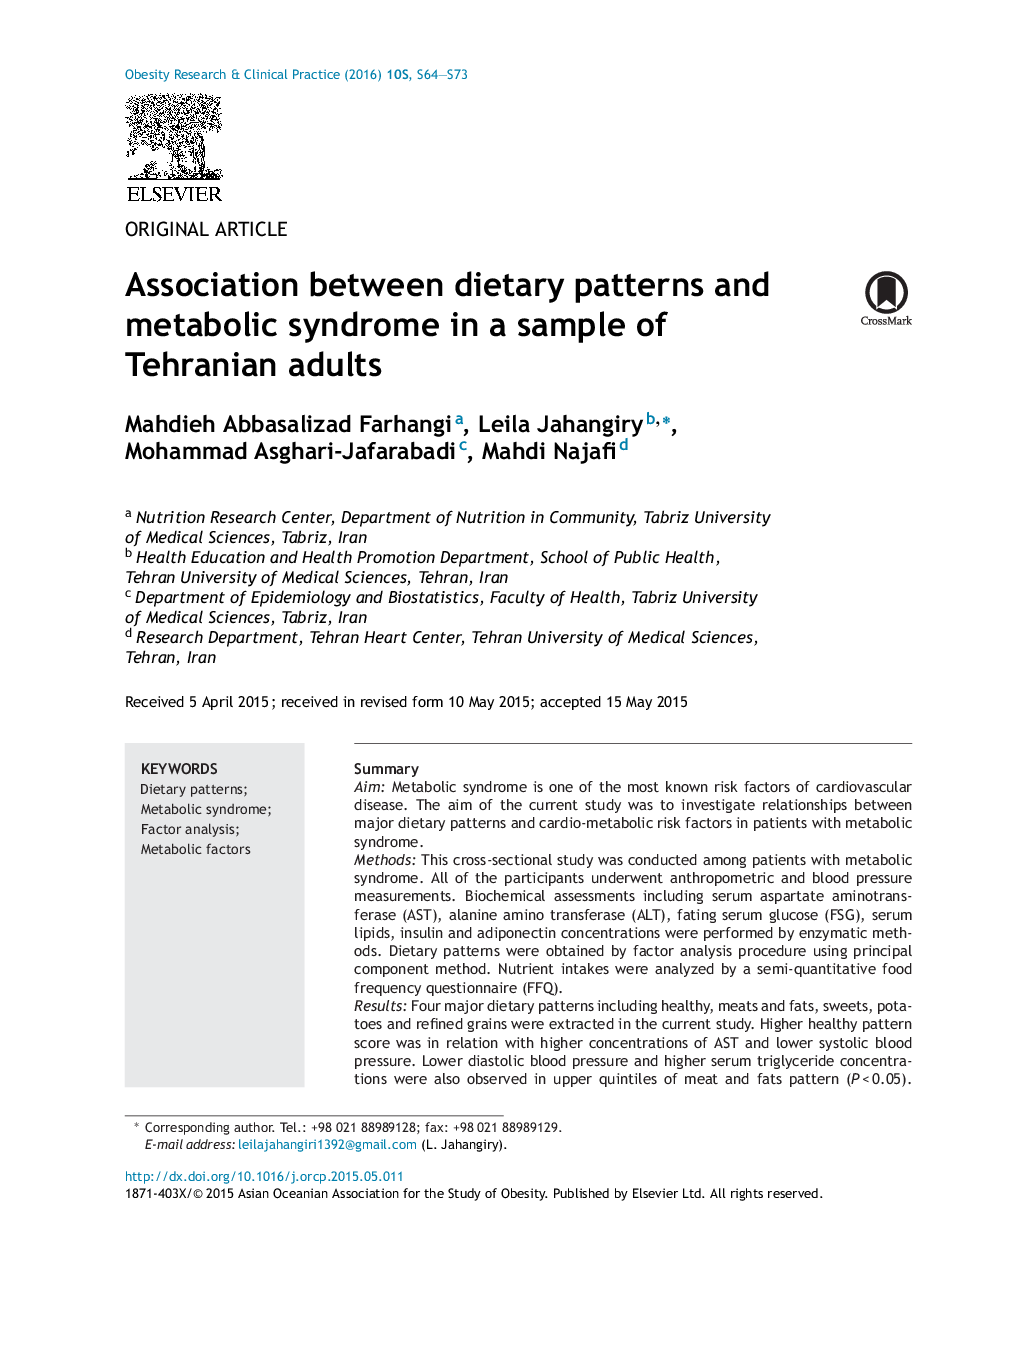 مقاله اصلی ارتباط بین الگوهای غذایی و سندرم متابولیک در نمونه ای از بزرگسالان تهرانی 